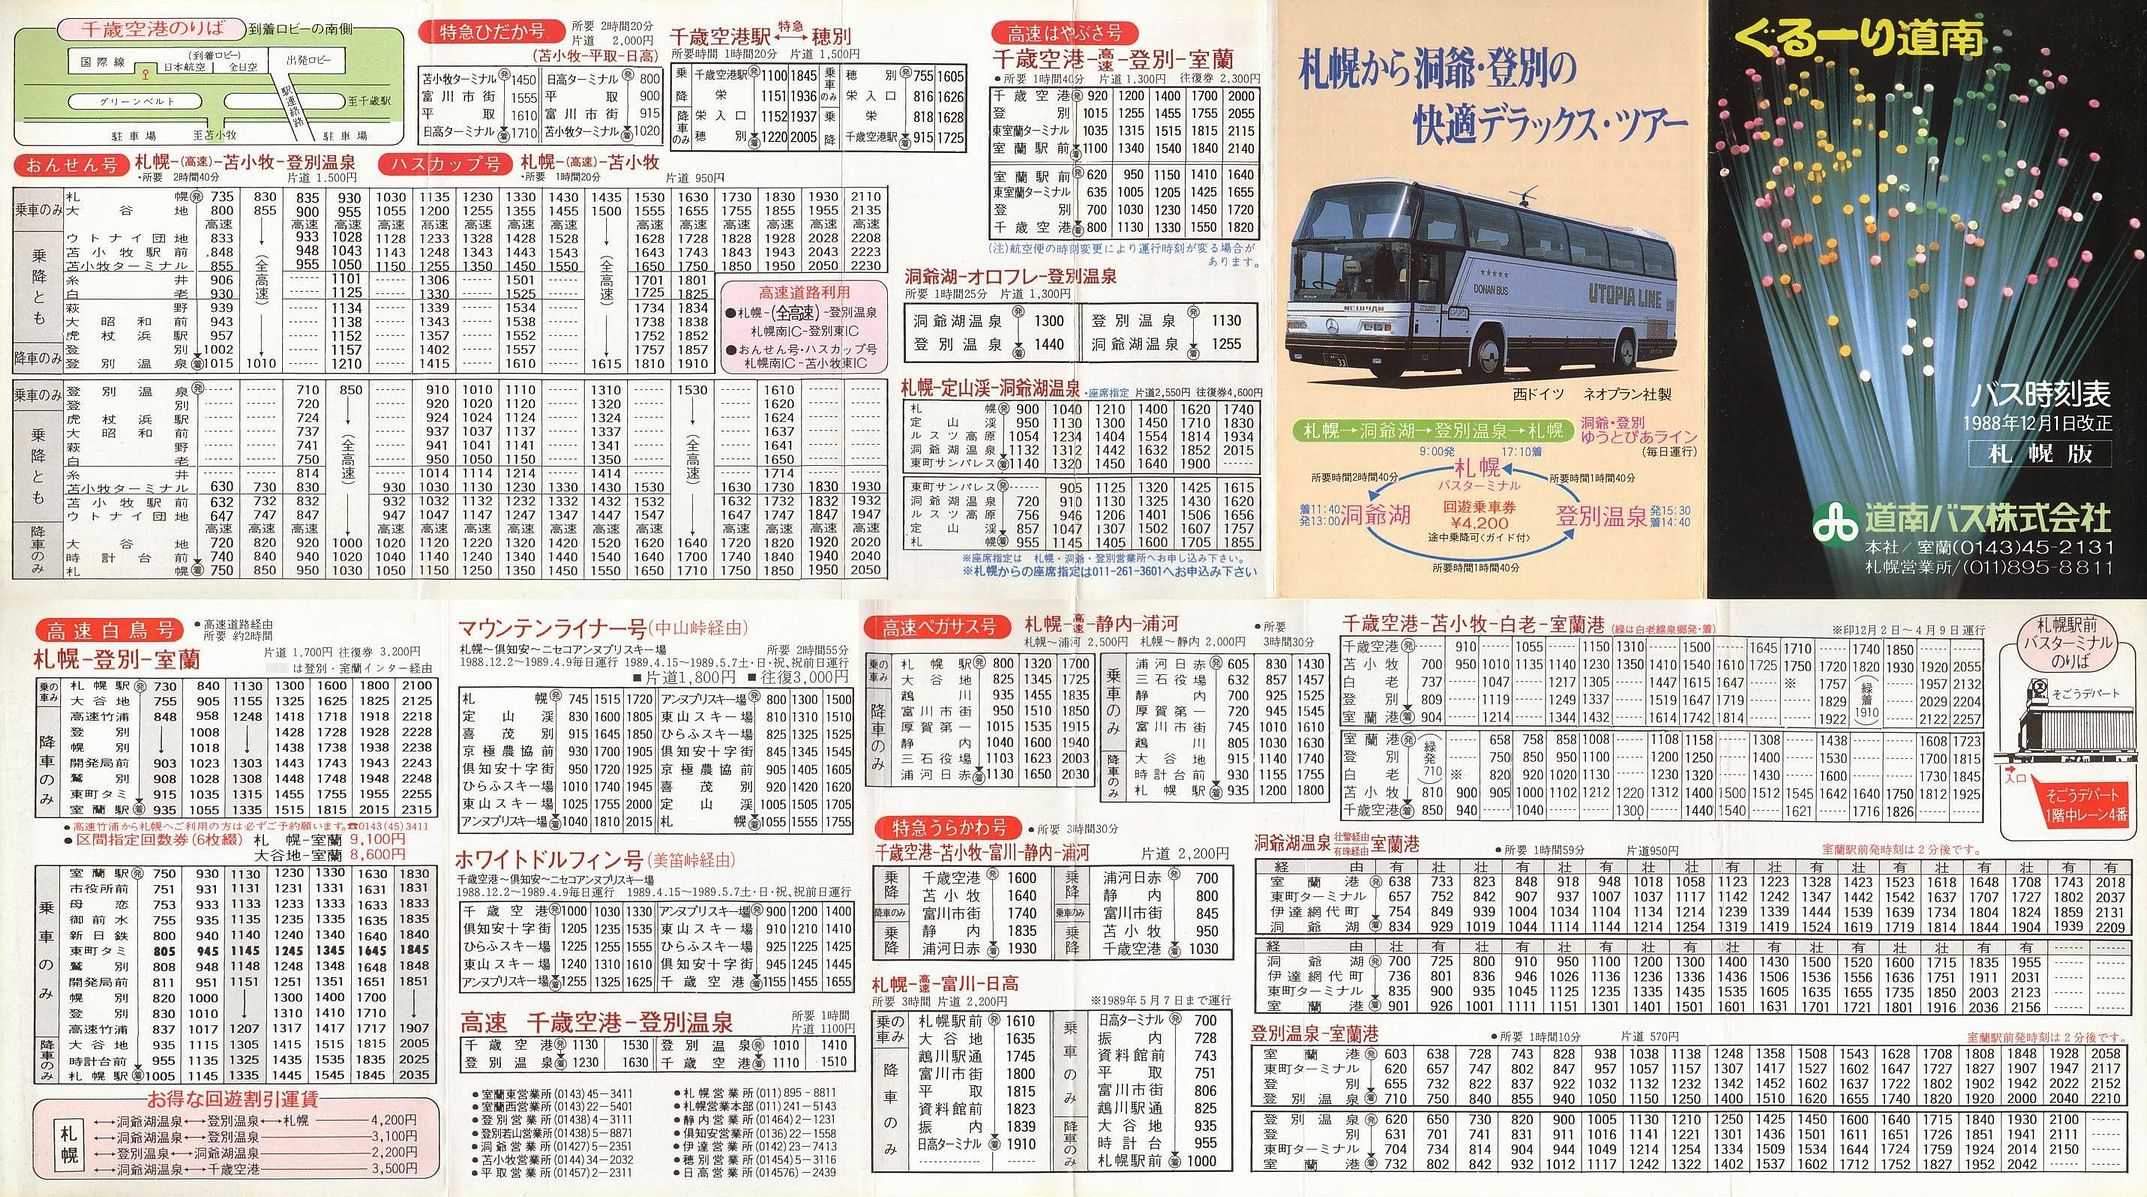 1988-12-01改正_道南バス_ぐるーり道南バス時刻表(札幌版)